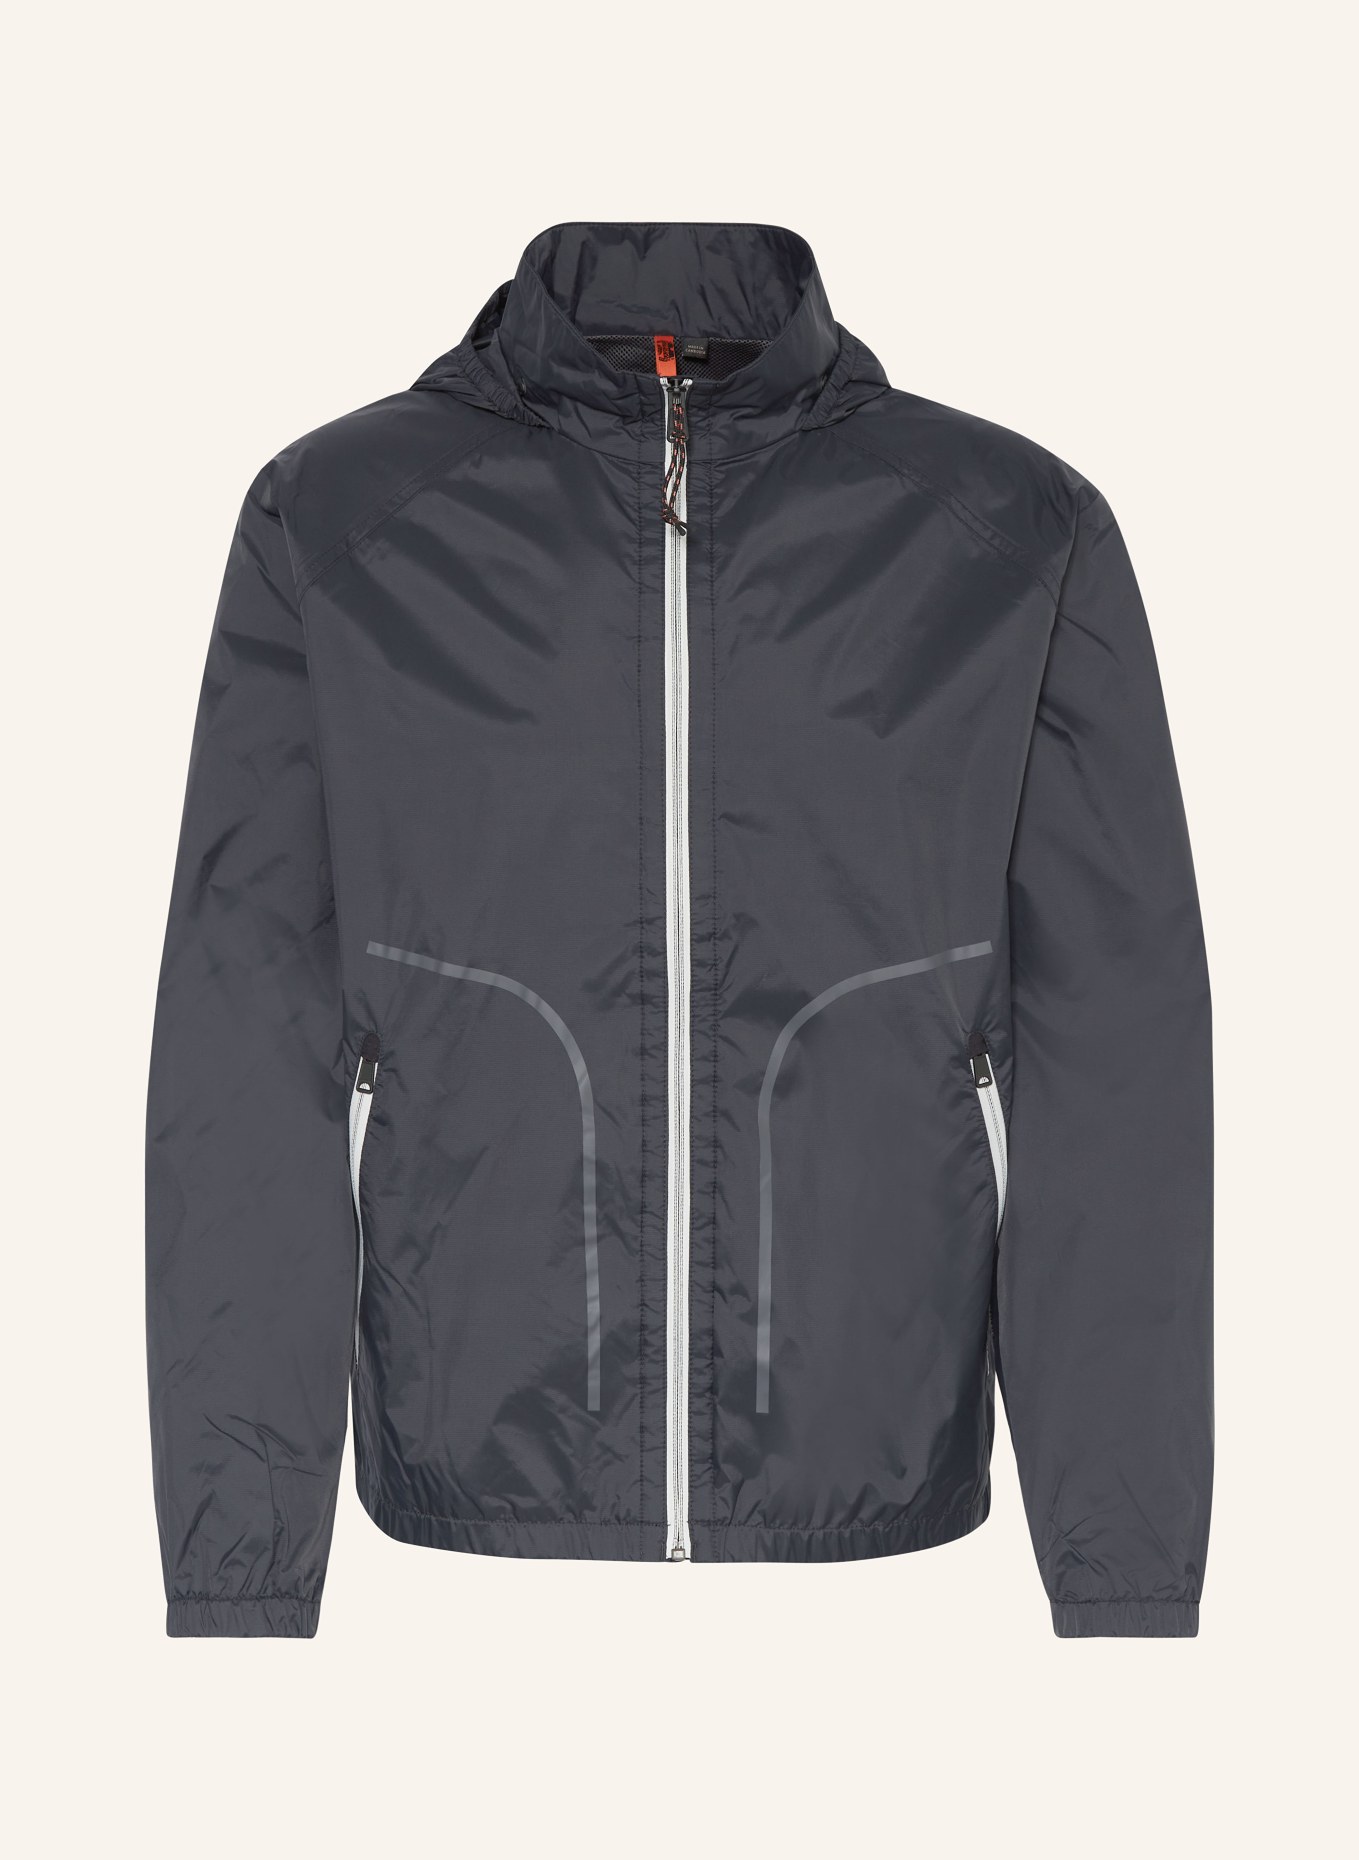 NAPAPIJRI Outdoor jacket CLOUDY, Color: BLACK (Image 1)